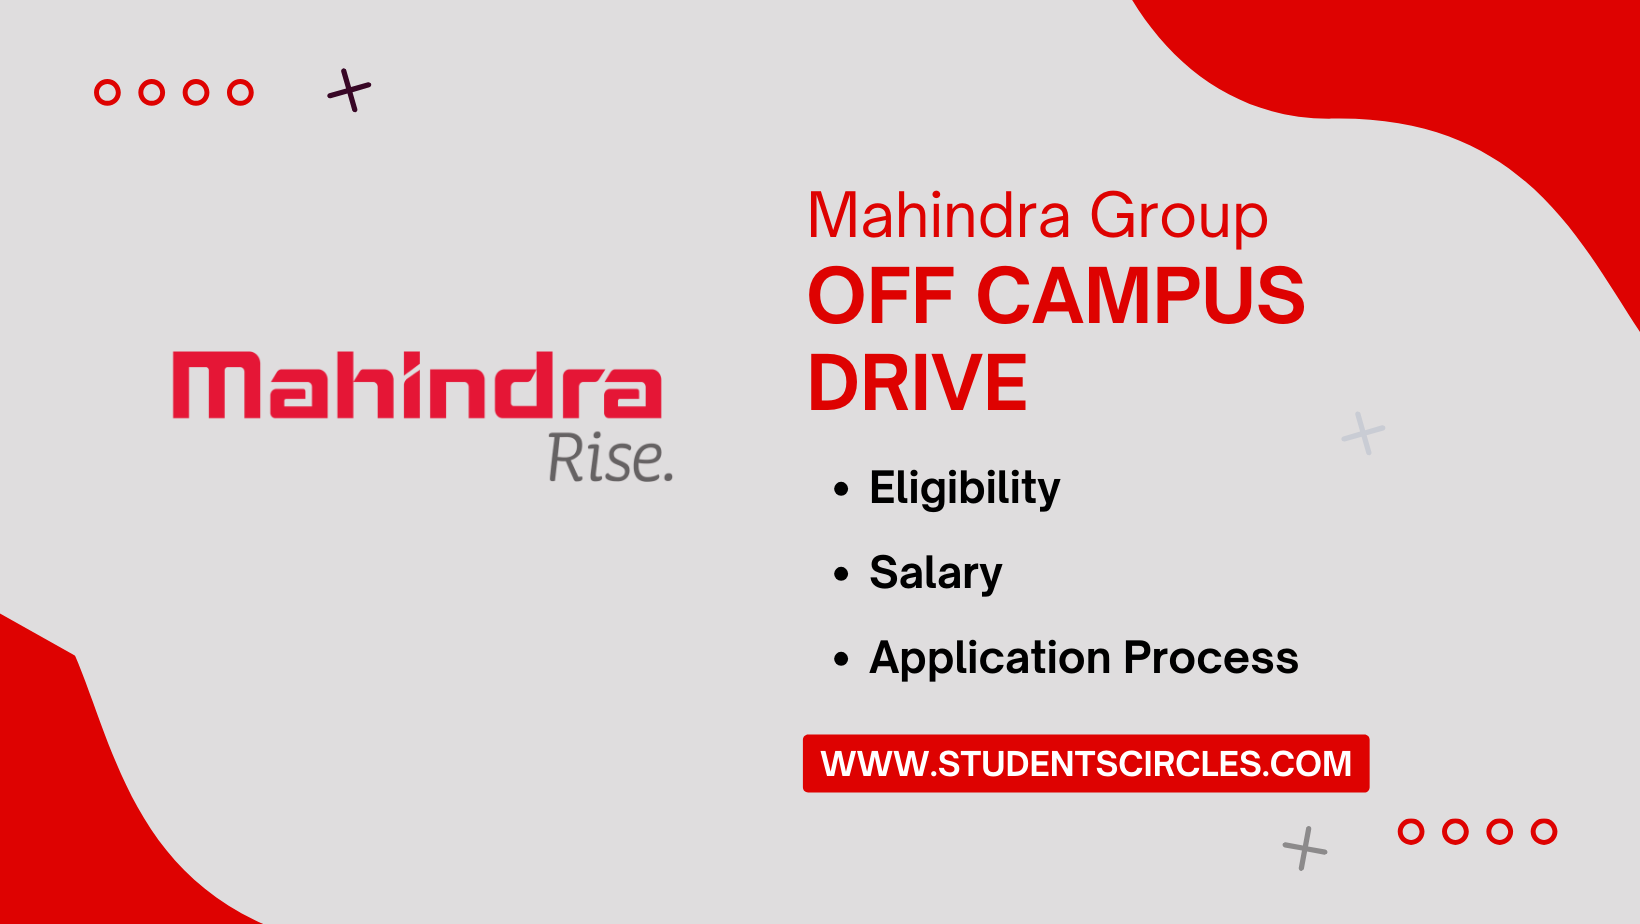 Mahindra Group Off Campus Drive